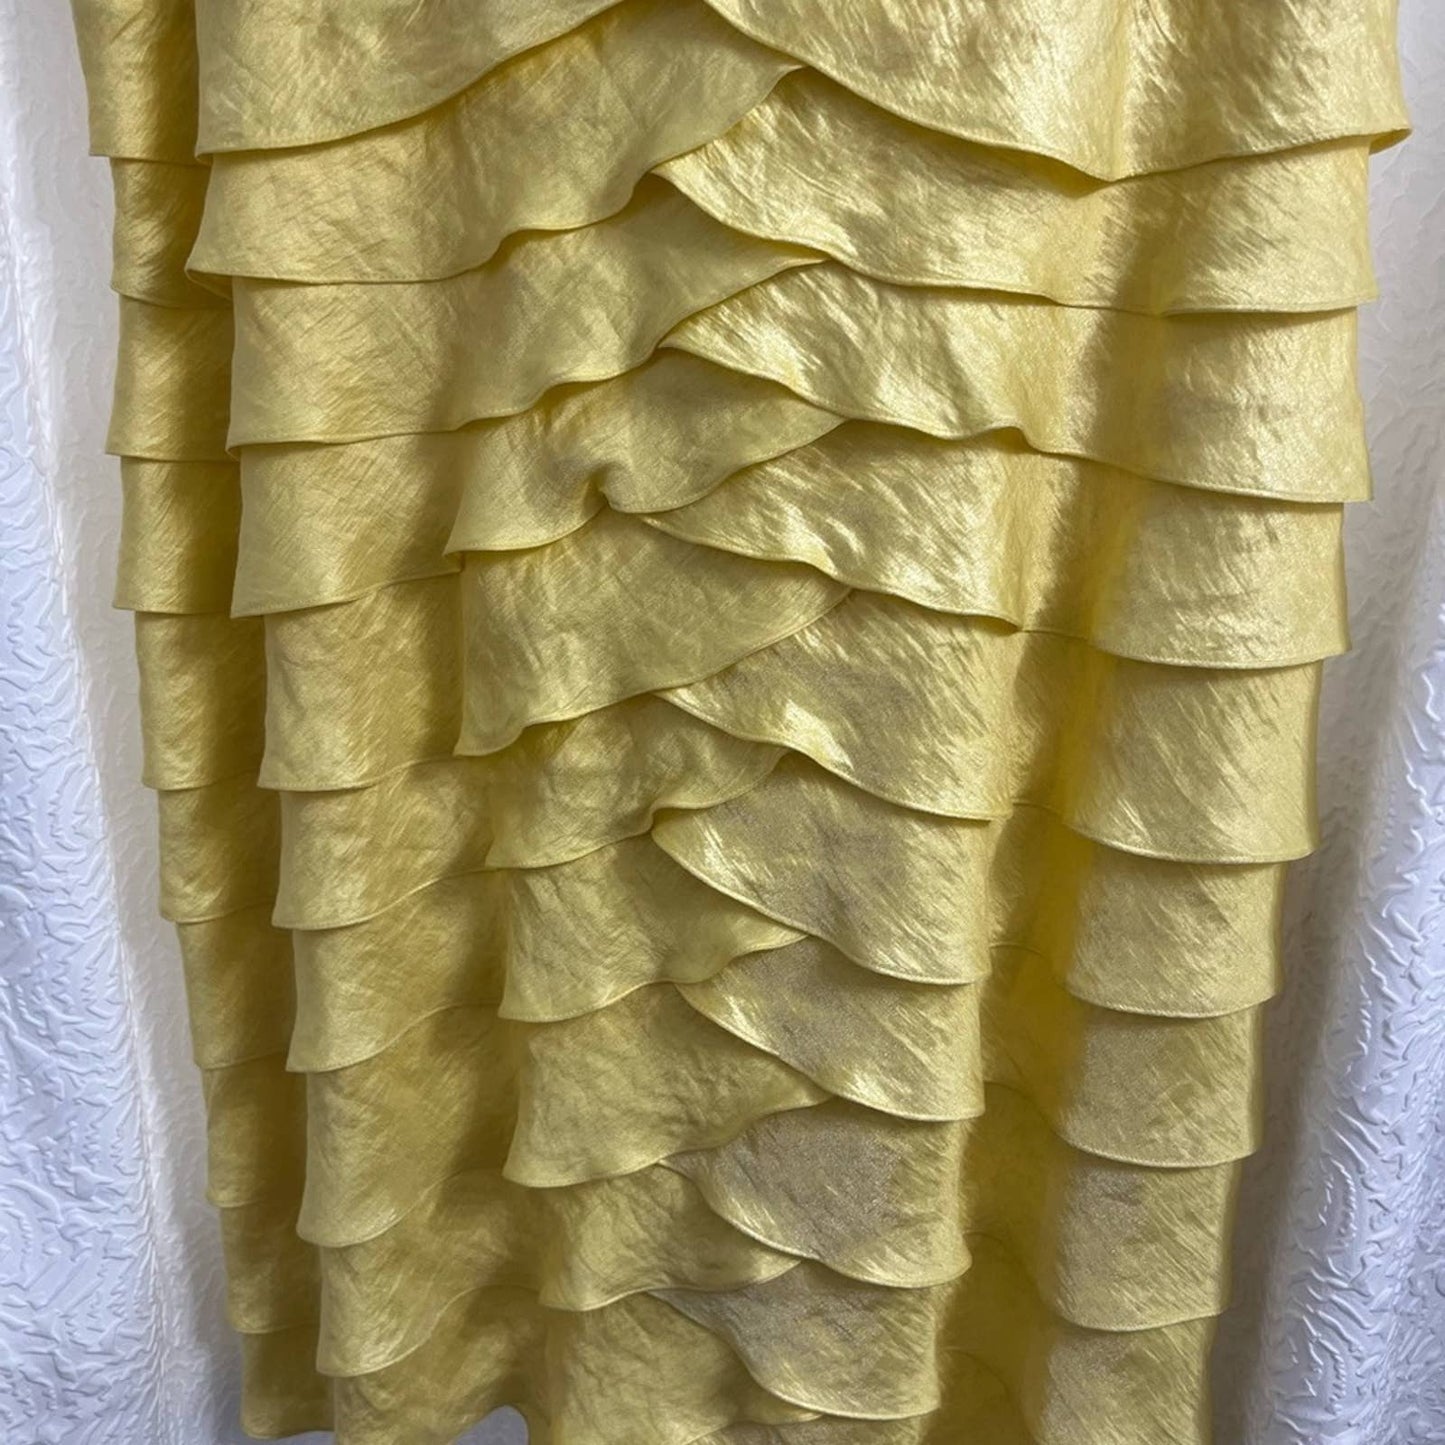 London Times Yellow Layered Sleeveless Dress 24